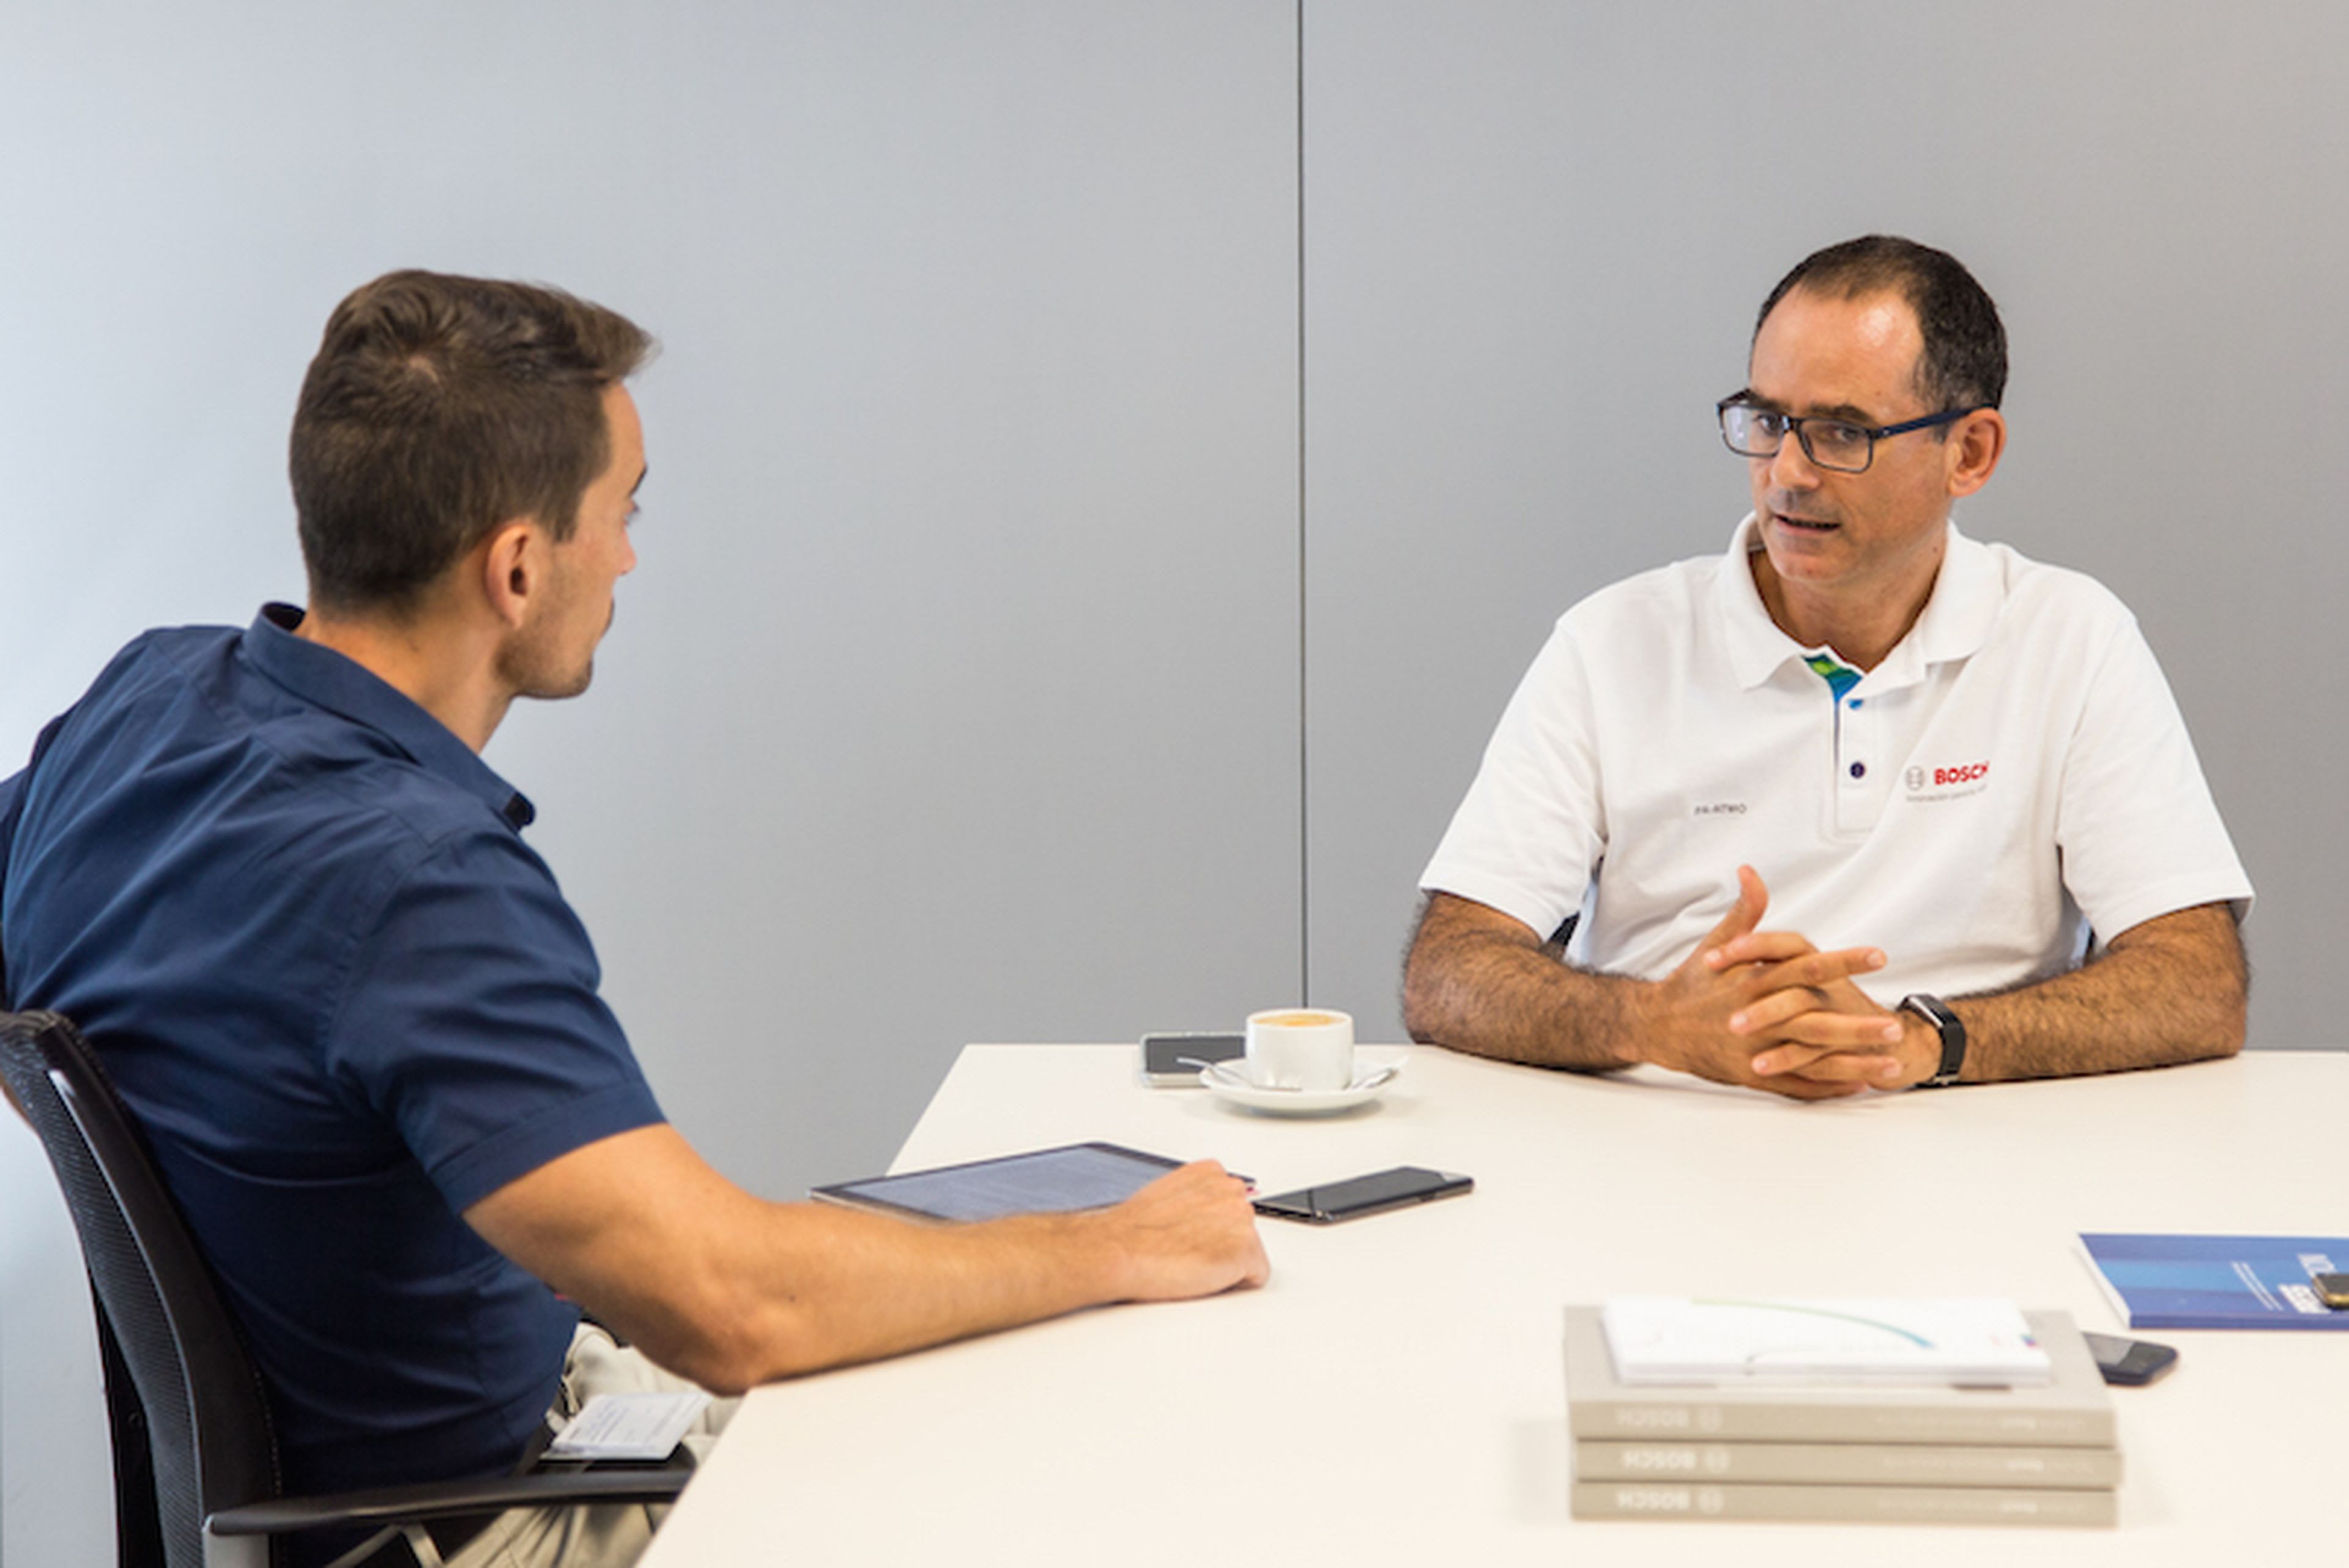 Javier González Pareja contesta a las preguntas de Manuel del Campo, CEO de Axel Springer España